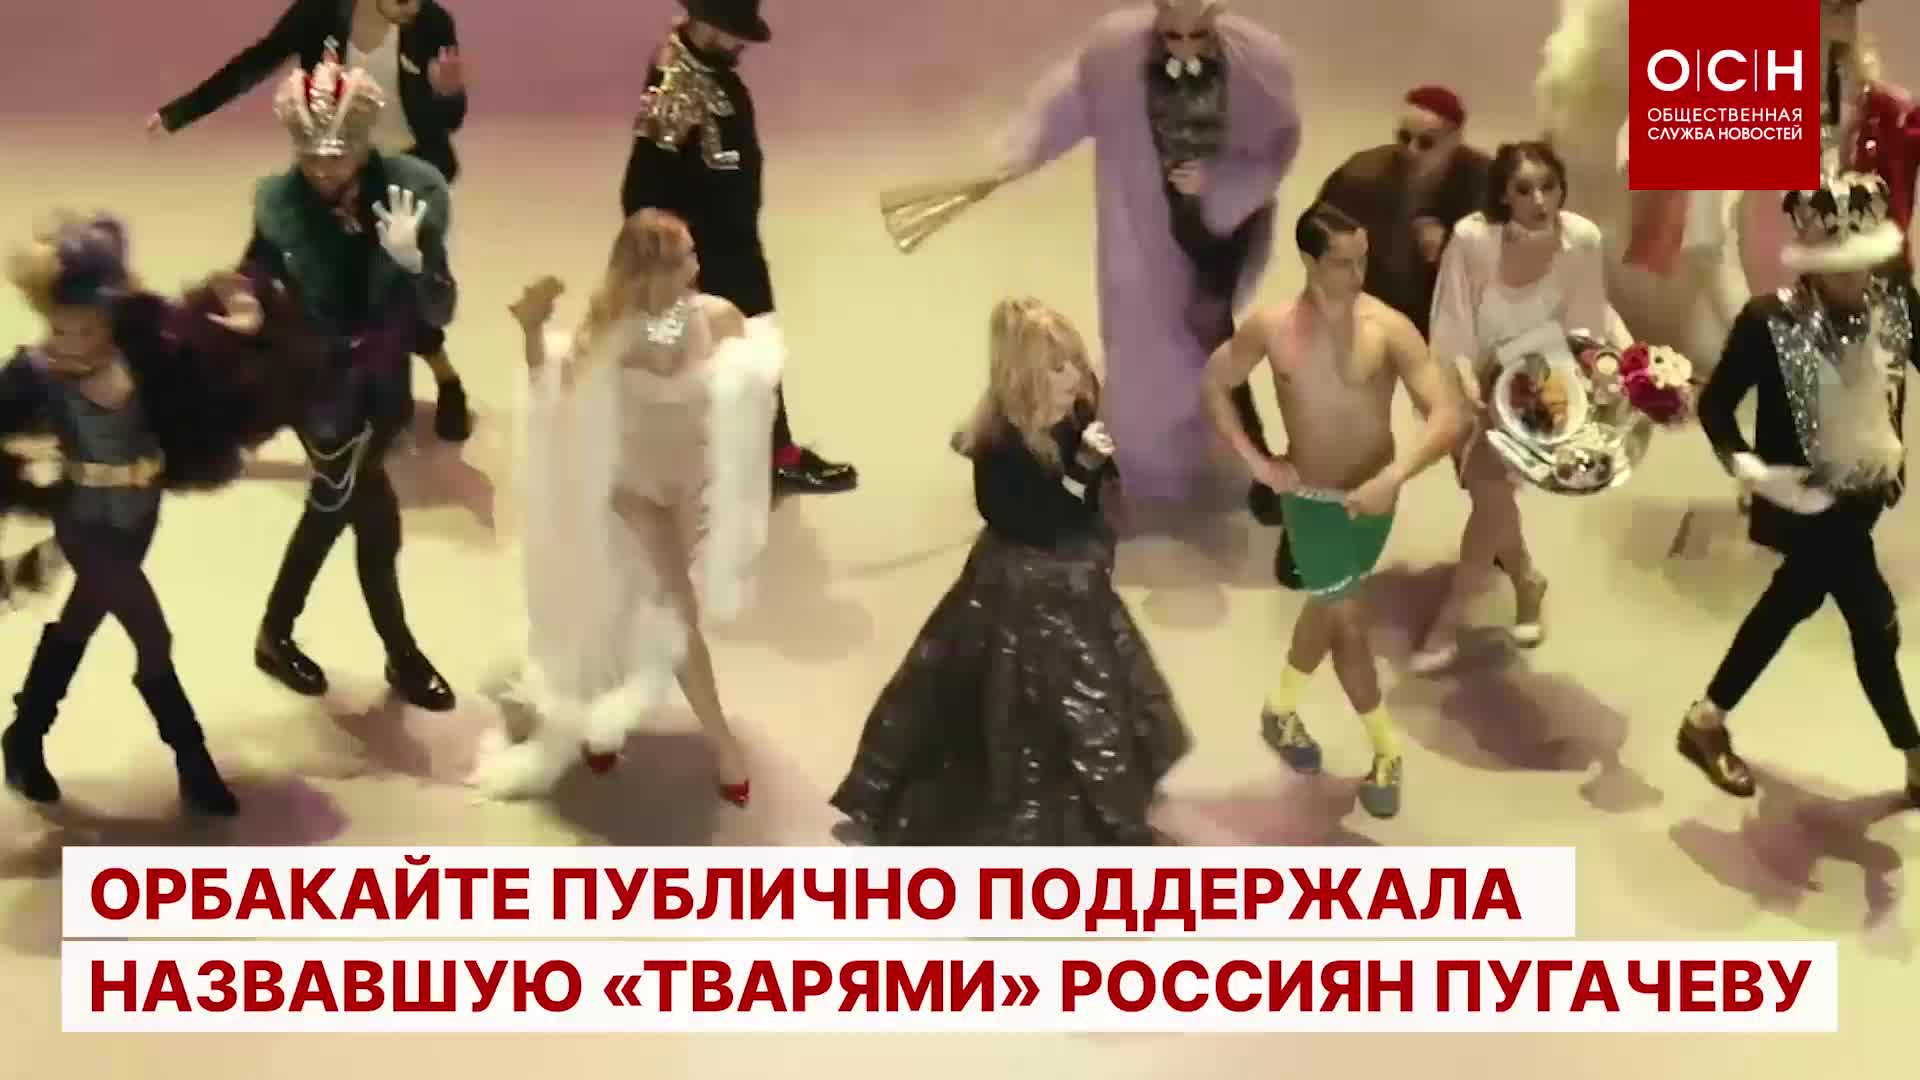 Пугачева оскорбила стаса михайлова видео. Орбакайте в цветах украинского флага. Орбакайте в костюме украинского флага.